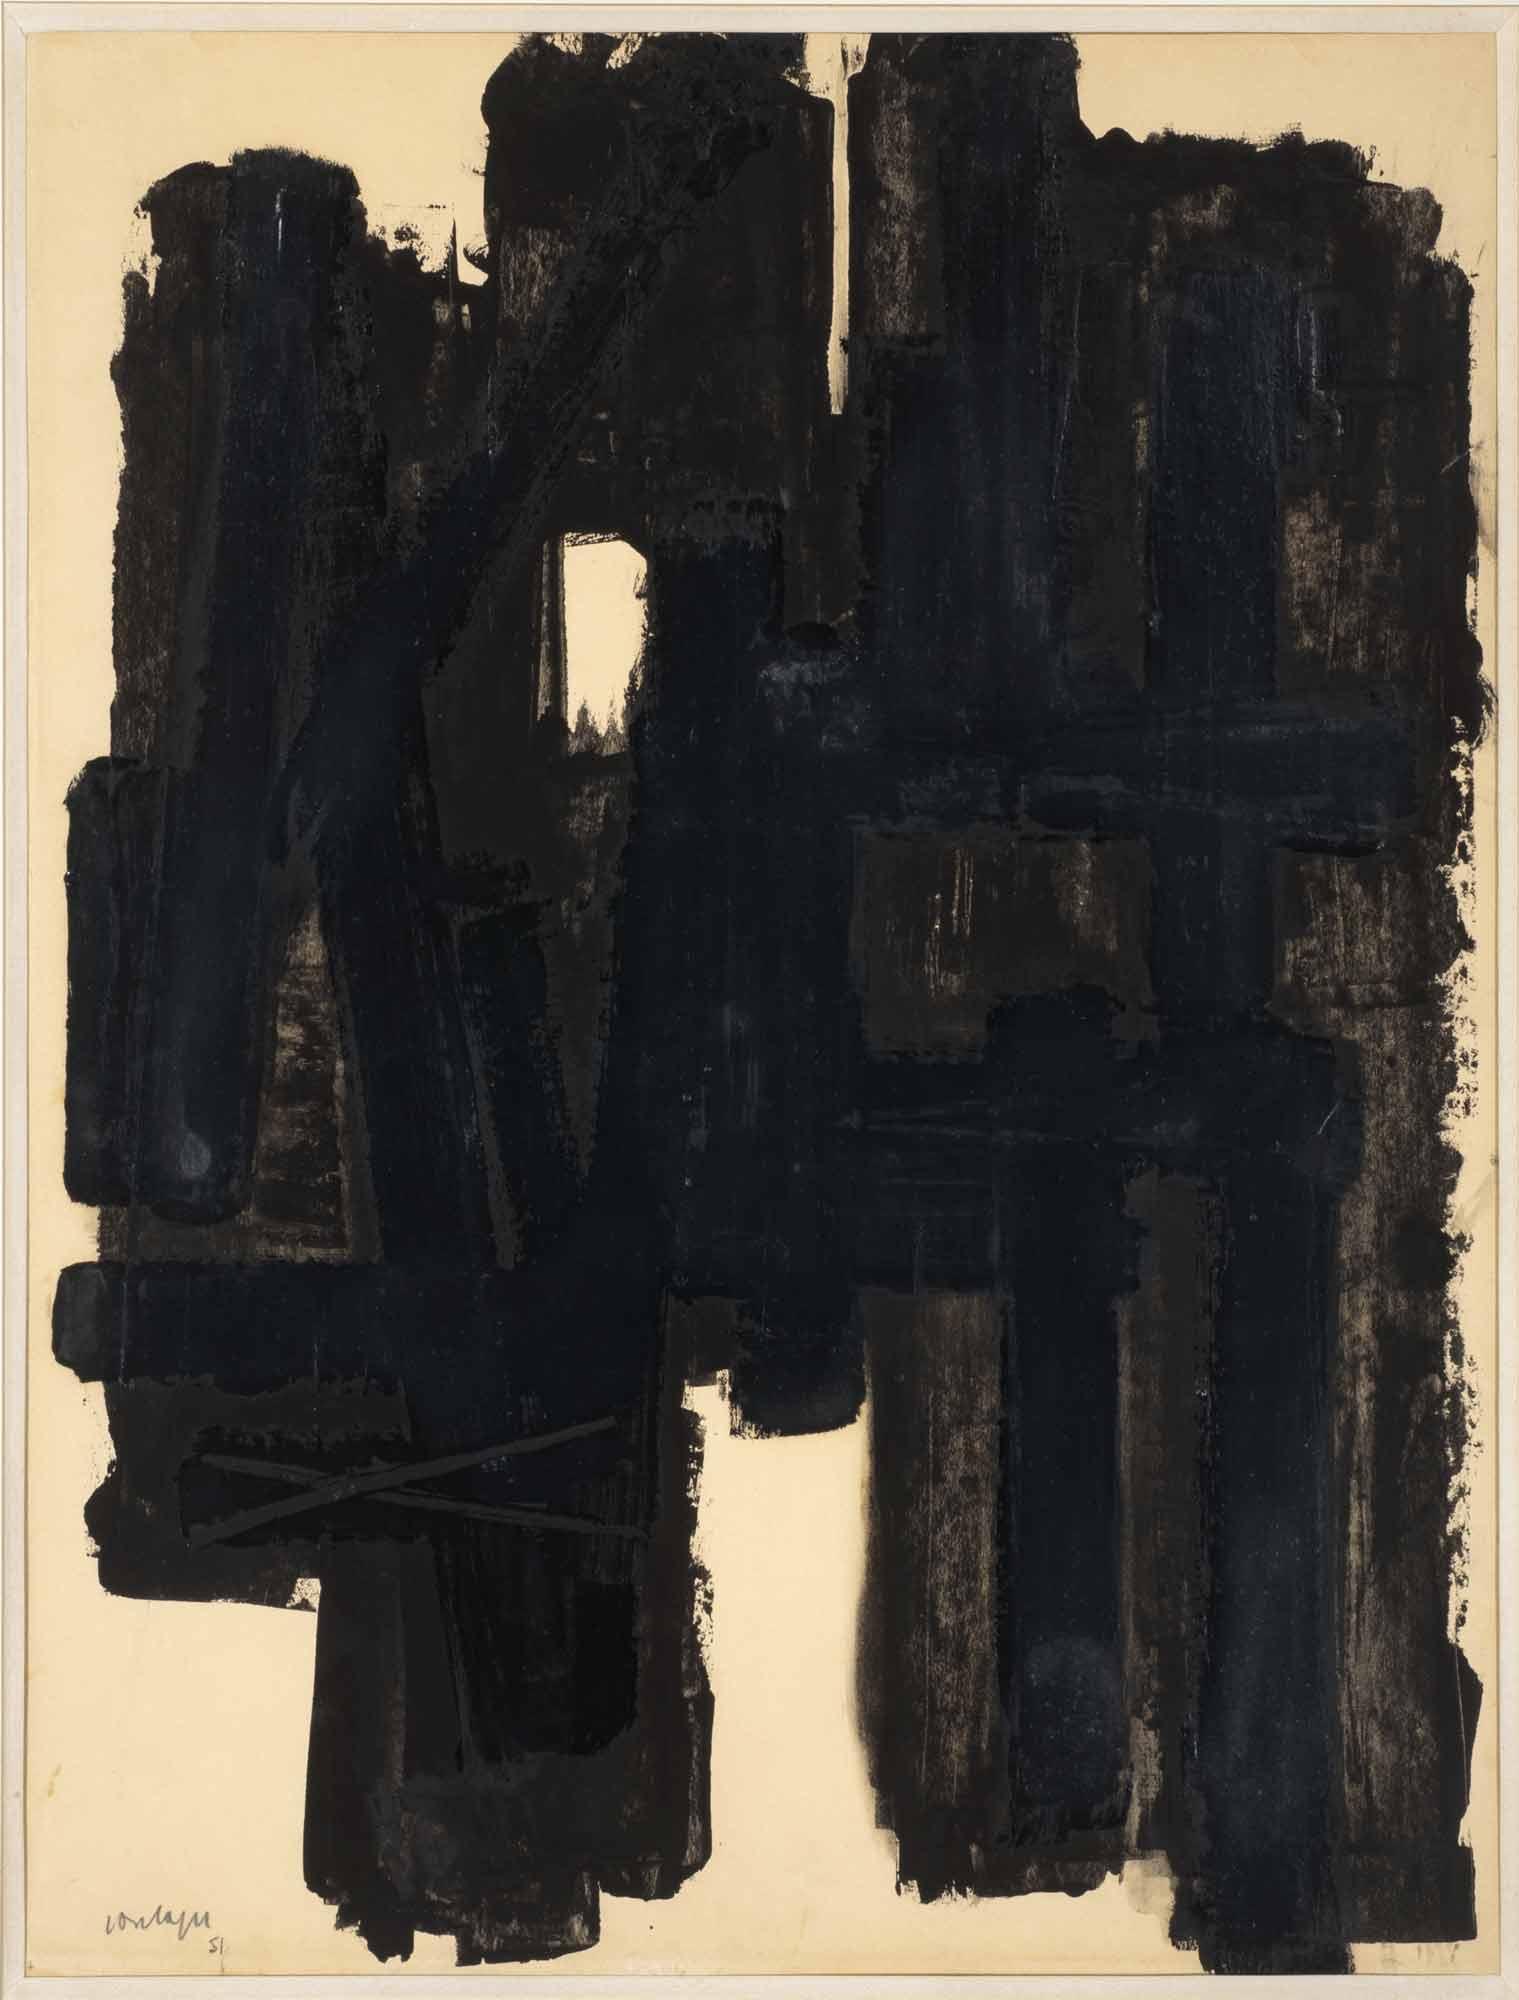 Pierre Soulages, Sans titre, 1951, gouache sur papier, 65 x 50 cm, Collection du peintre Zao Wou-Ki / Donation Françoise Marquet-Zao, Musée de l'Hospice Saint-Roch, Issoudun. [DR - Antoine Mercier]